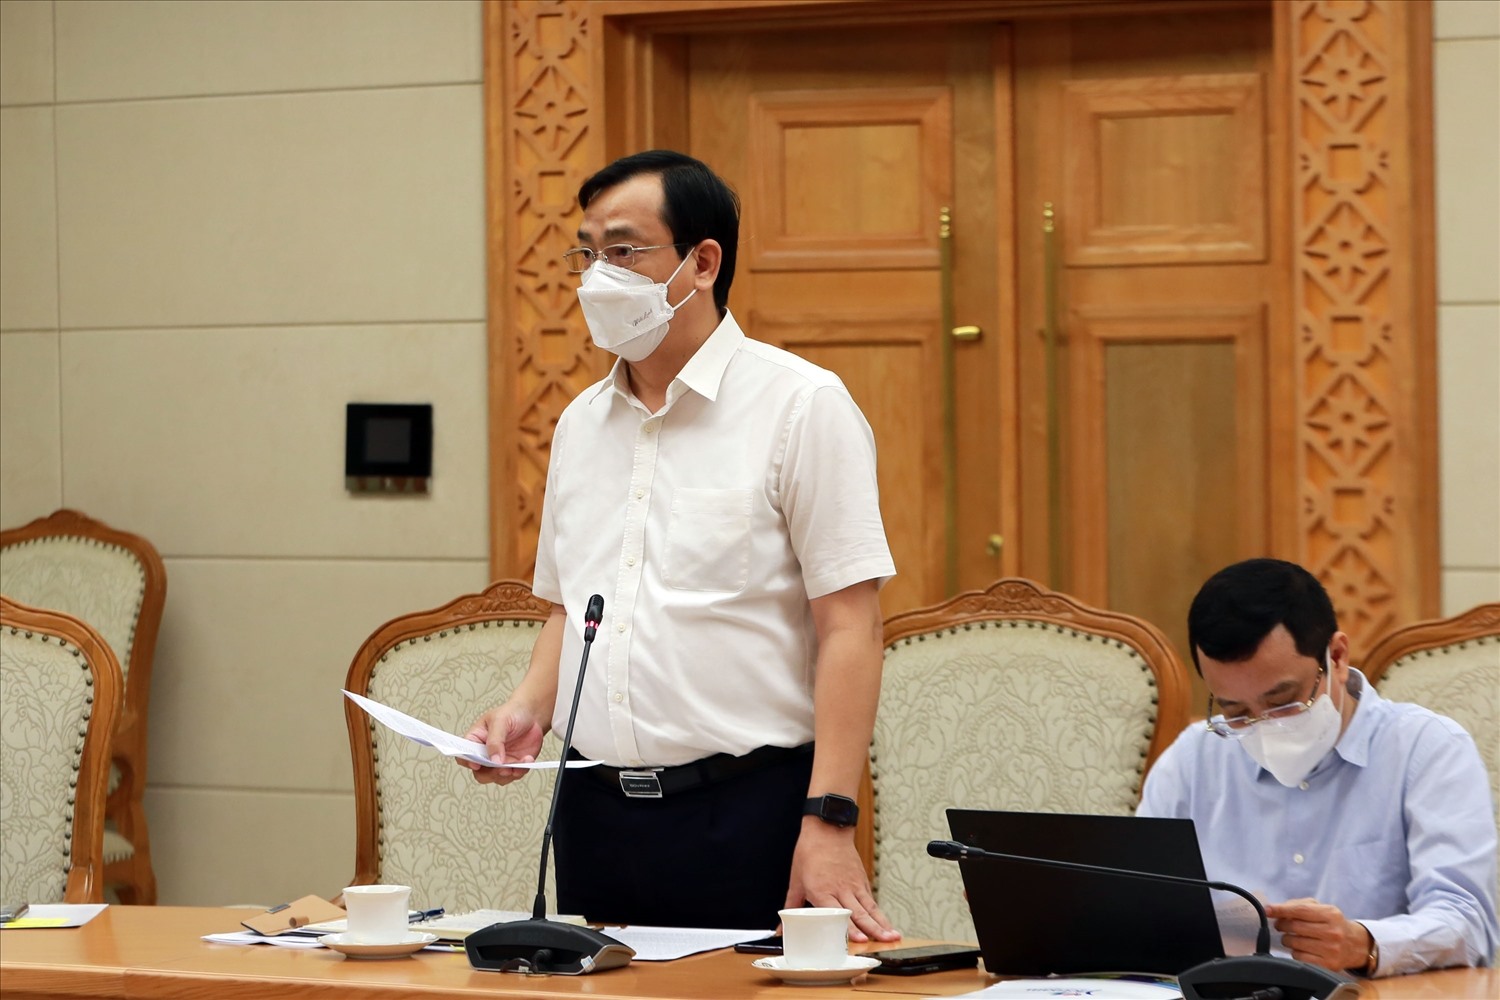 Tổng cục trưởng Tổng cục Du lịch Nguyễn Trùng Khánh cho biết nhiều địa phương đã bắt đầu xây dựng nhiều phương án để đưa ngành du lịch nội địa trở lại trong điều kiện bình thường mới từ tháng 11/2021. Ảnh: VGP/Đình Nam